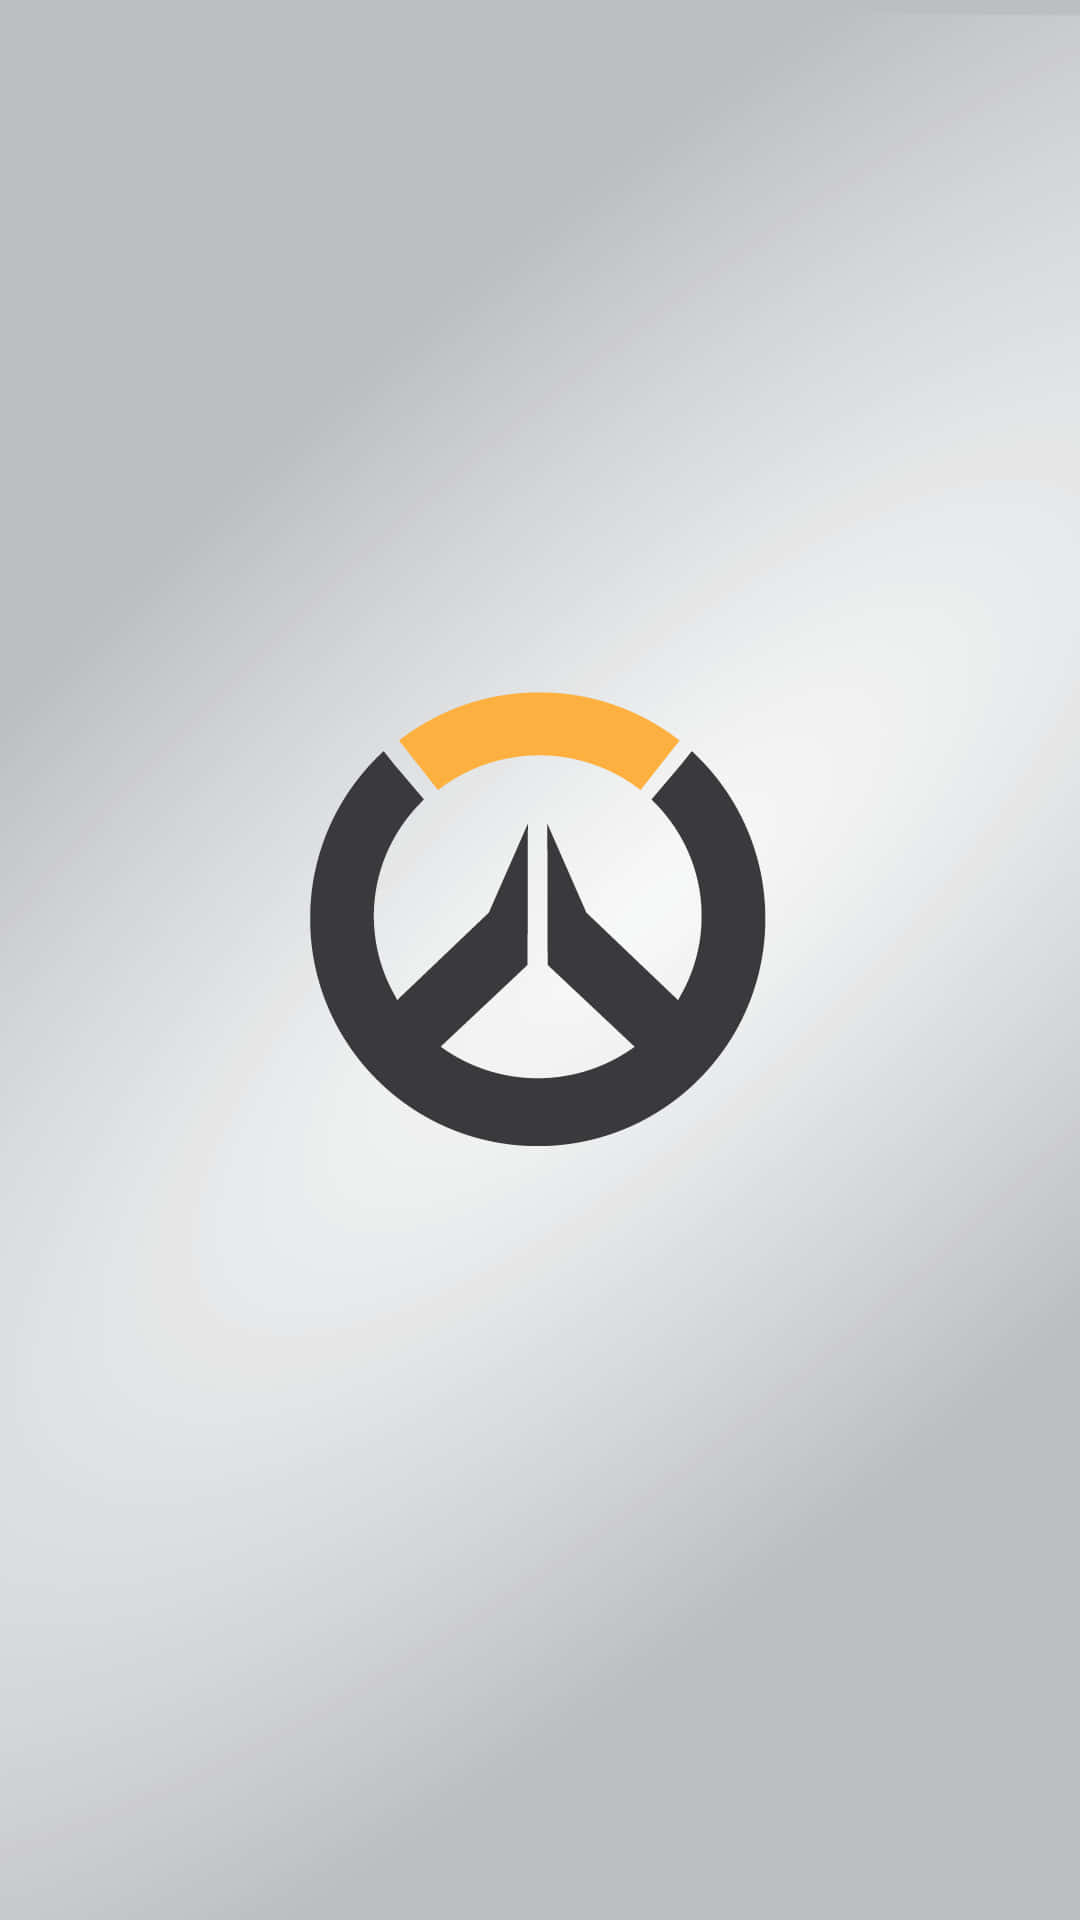 Minimalistischespixel 3xl Overwatch Hintergrundspiel-logo